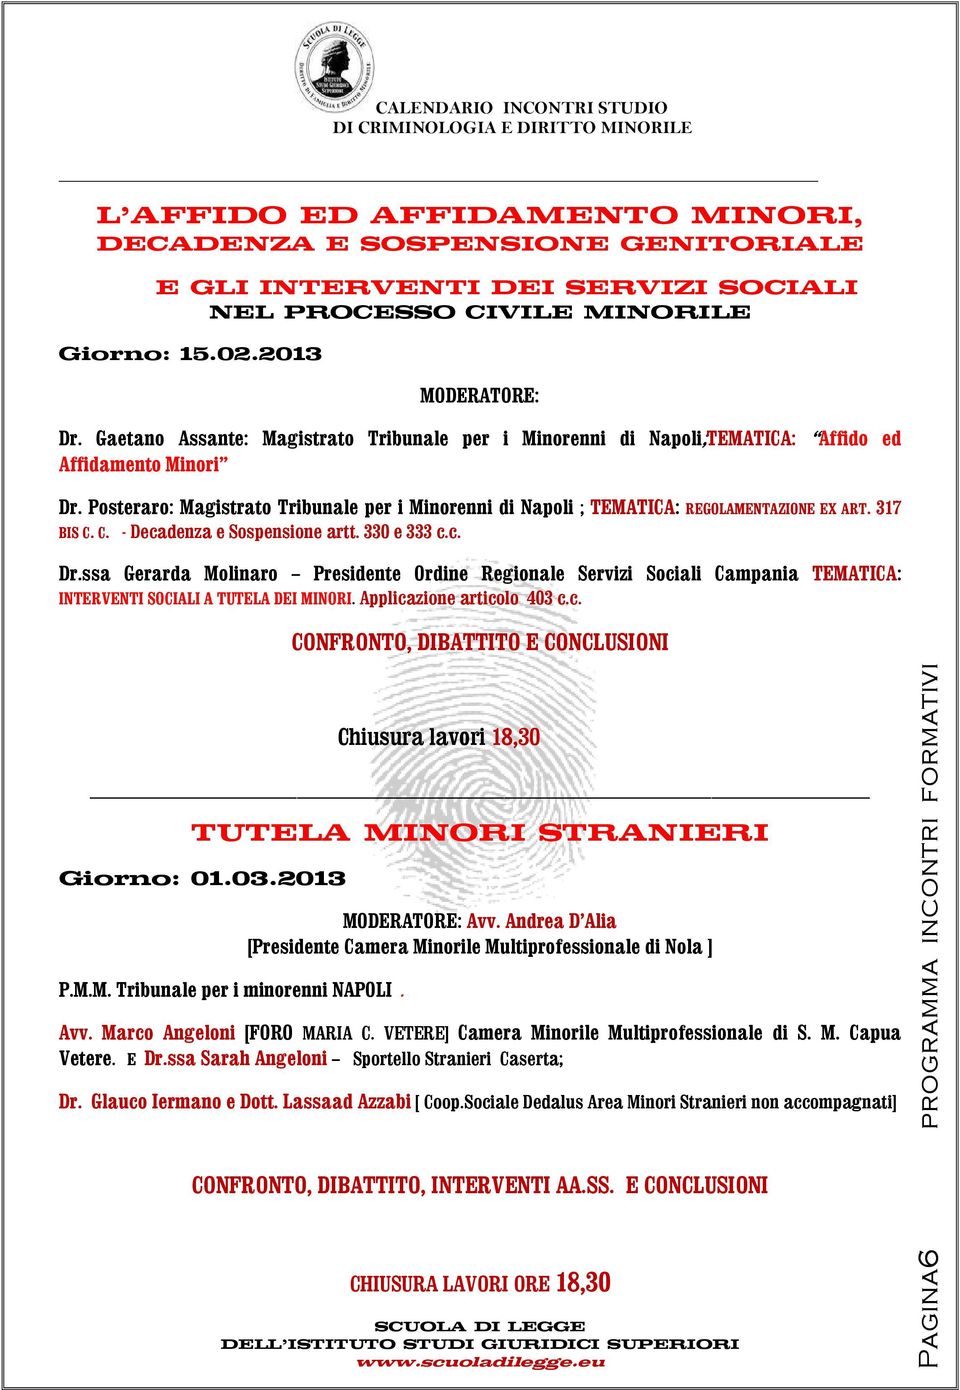 Posteraro: Magistrato Tribunale per i Minorenni di Napoli ; TEMATICA: REGOLAMENTAZIONE EX ART. 317 BIS C. C. - Decadenza e Sospensione artt. 330 e 333 c.c. Dr.